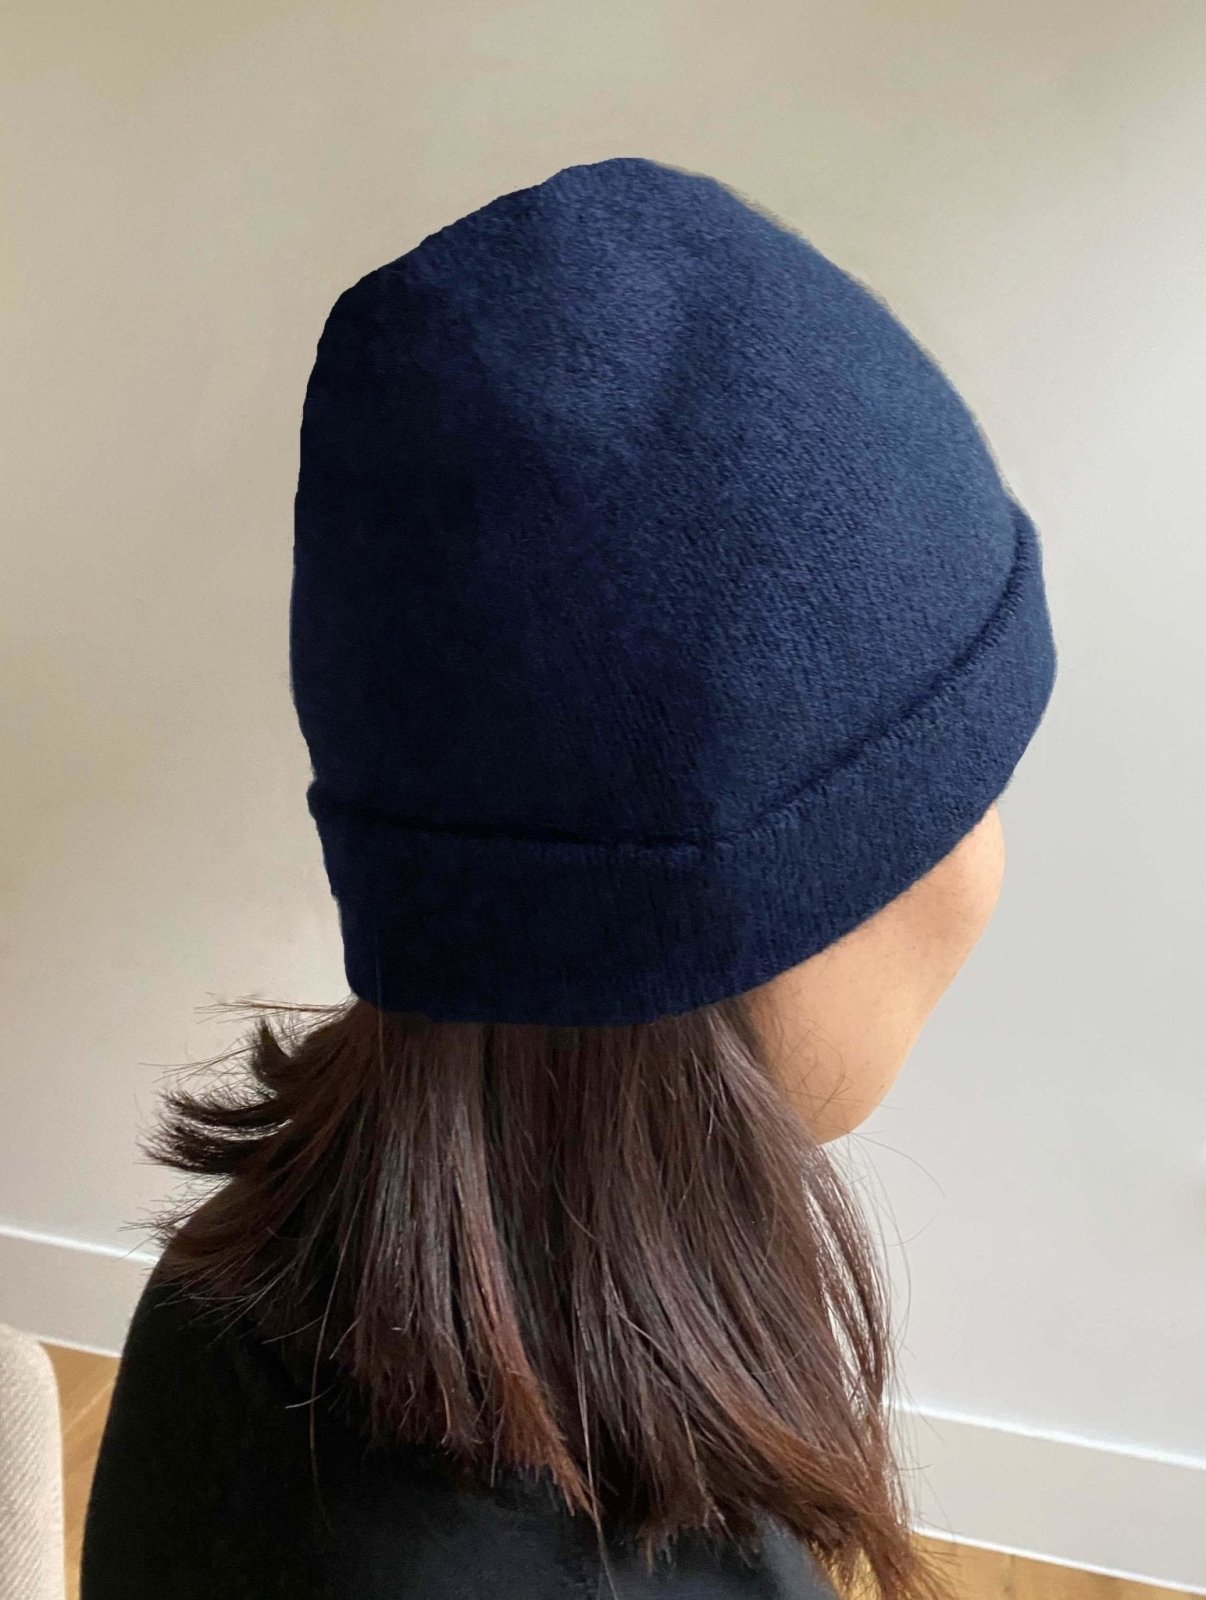 Womens cashmere beanie hat in navy - SEMON Cashmere